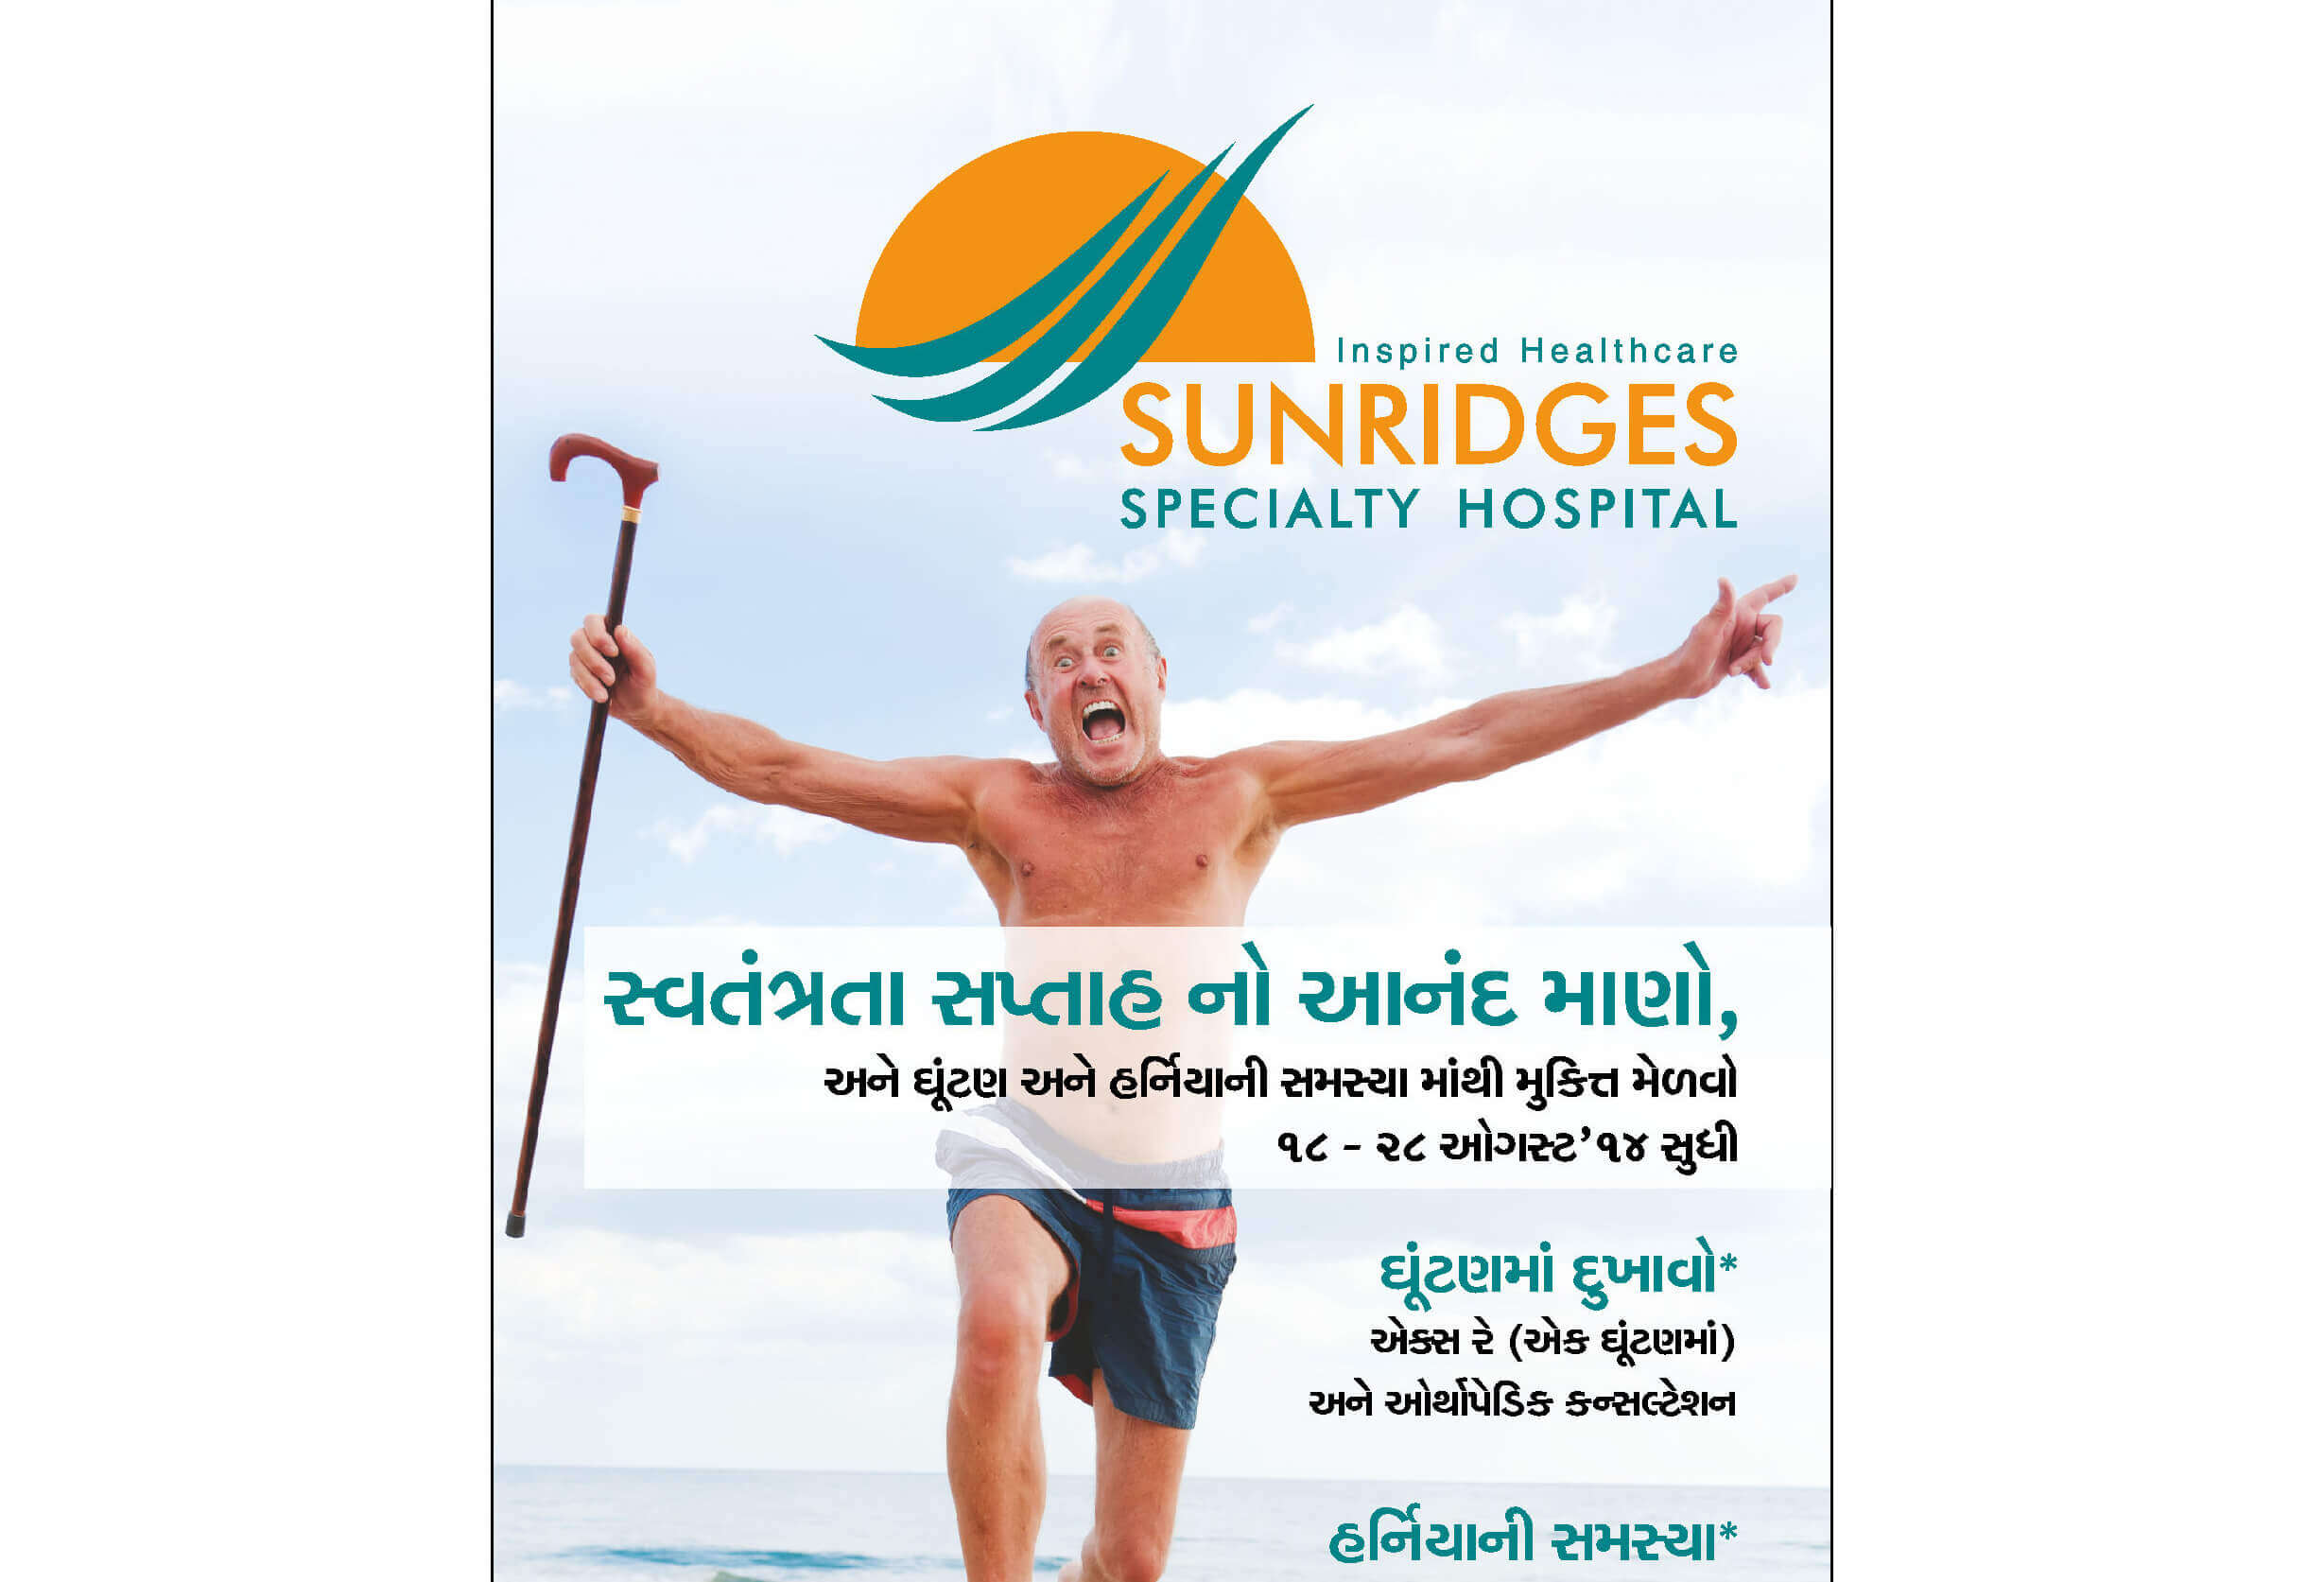 Sundridges Hospital